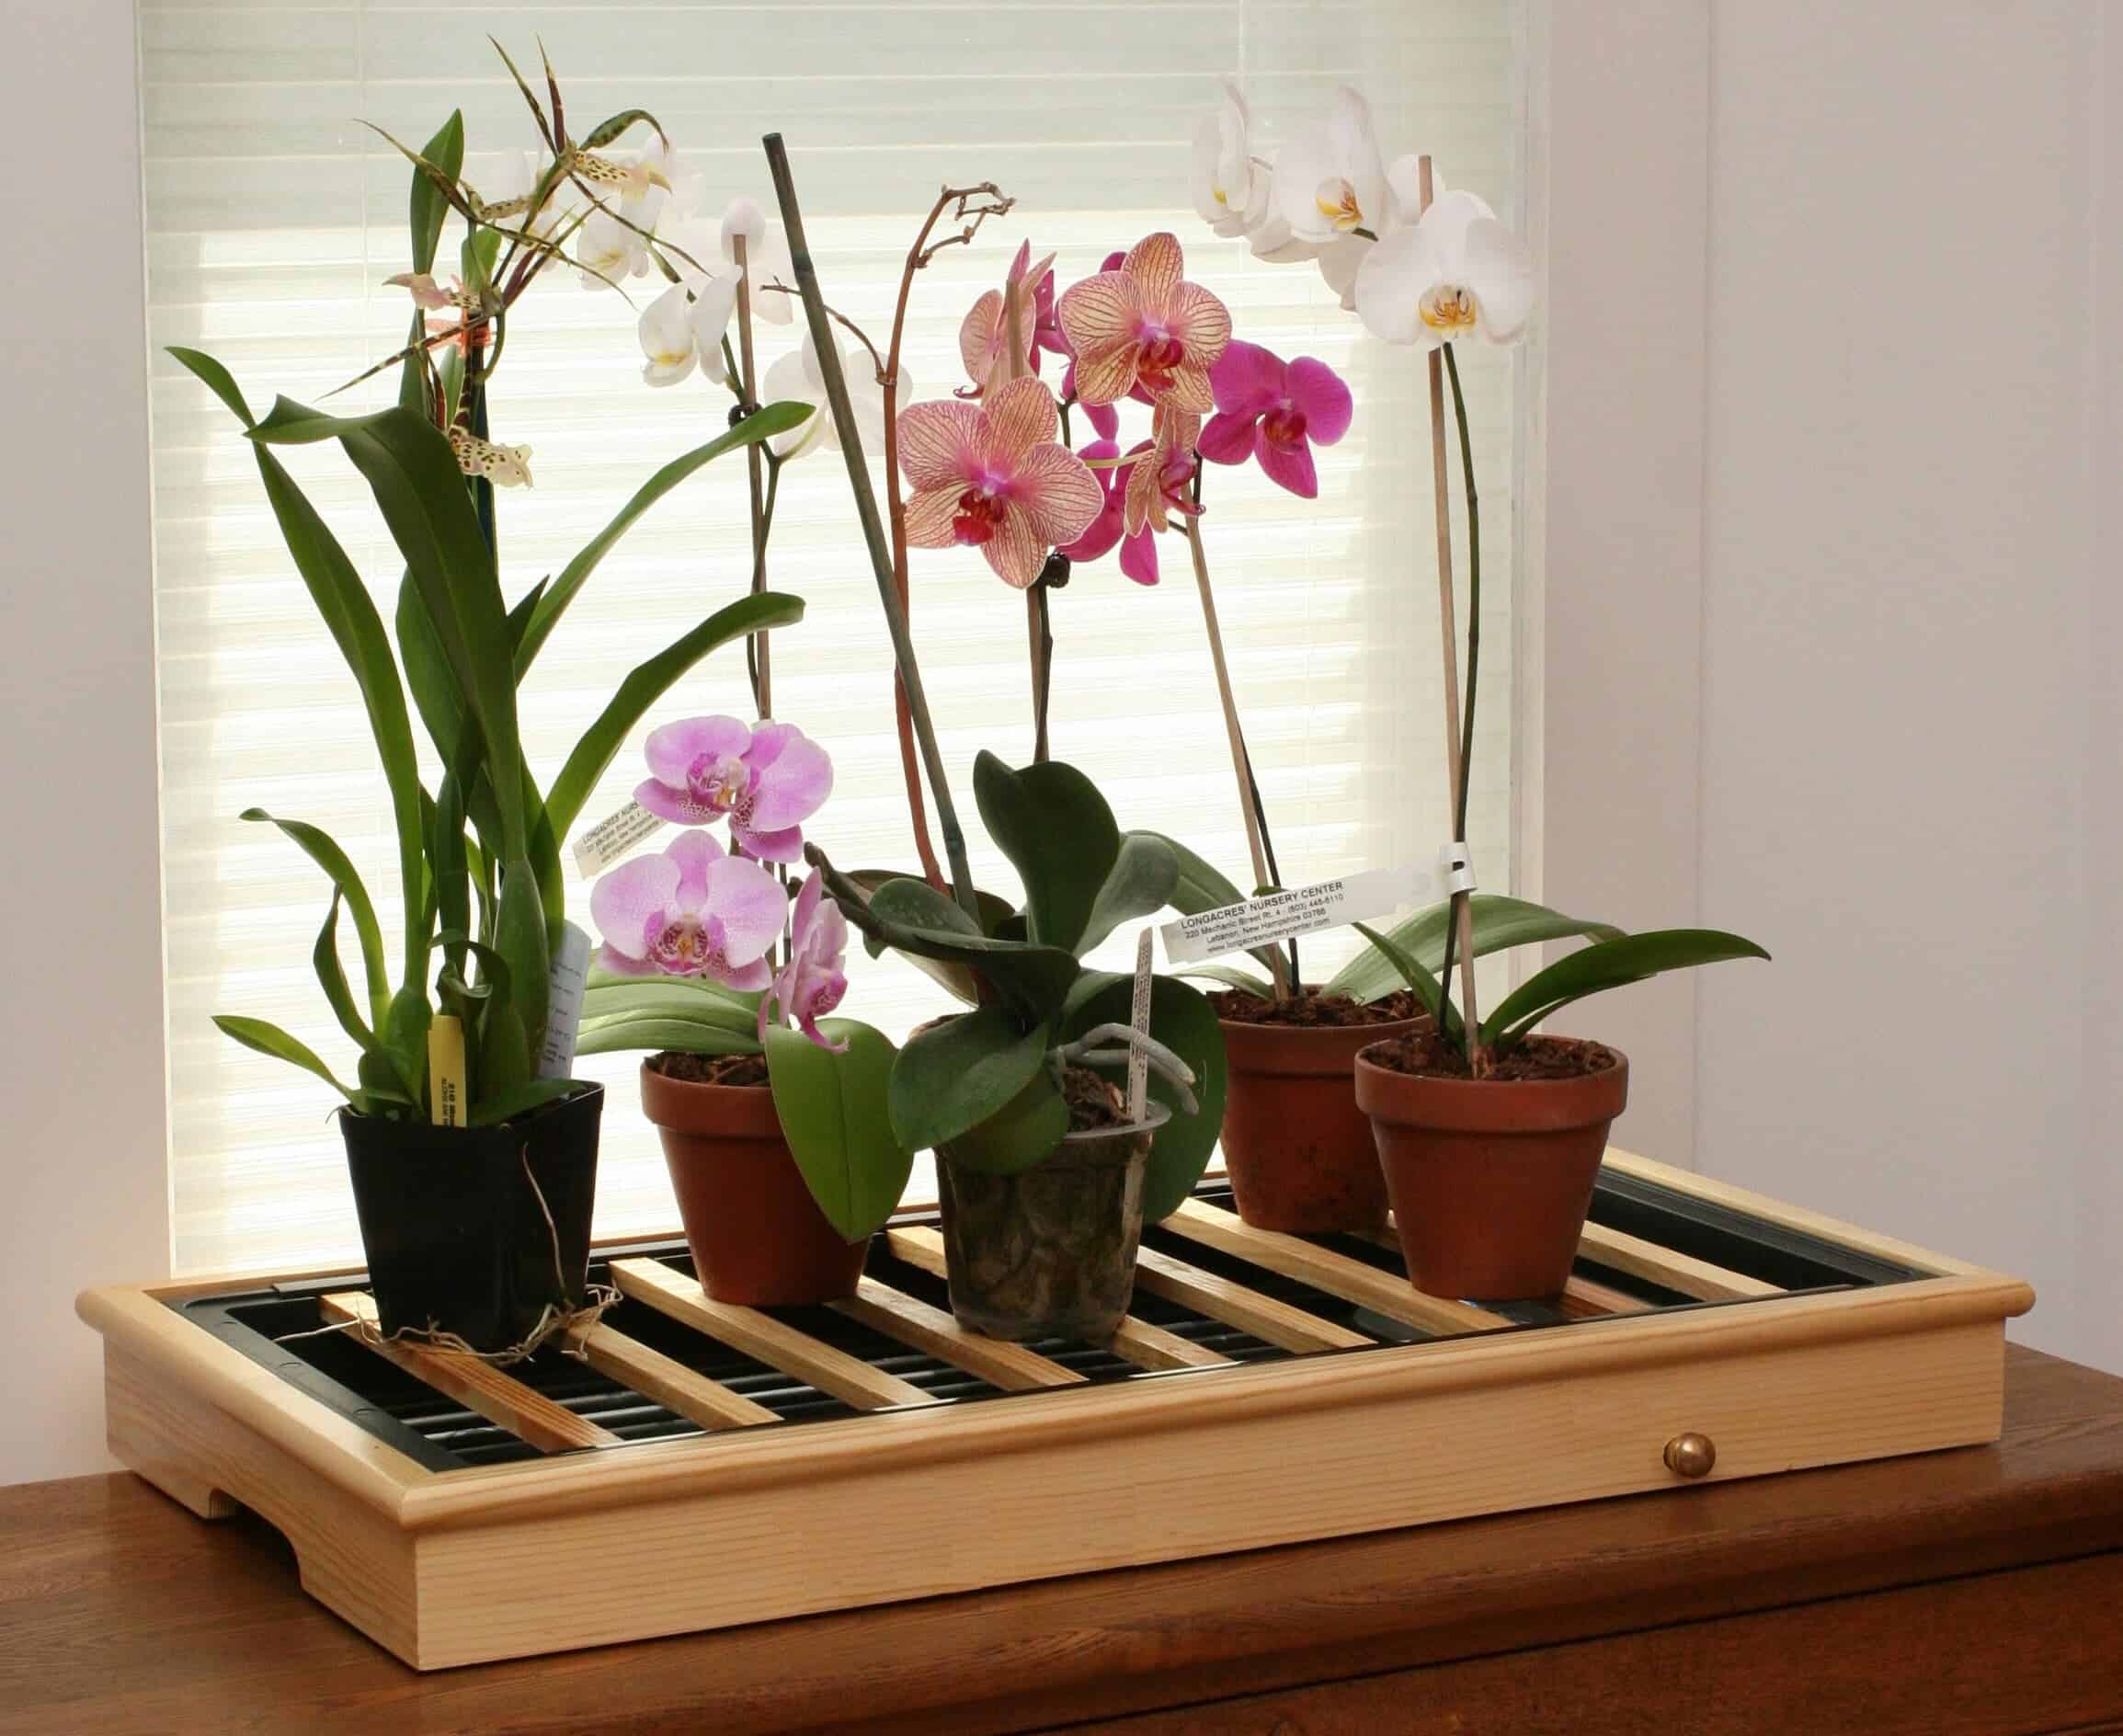 Как украсить помещение экзотическими цветами Орхидеи как оригинальный элемент оформления гостиной и других комнат Интересные идеи декора, советы по выращиванию